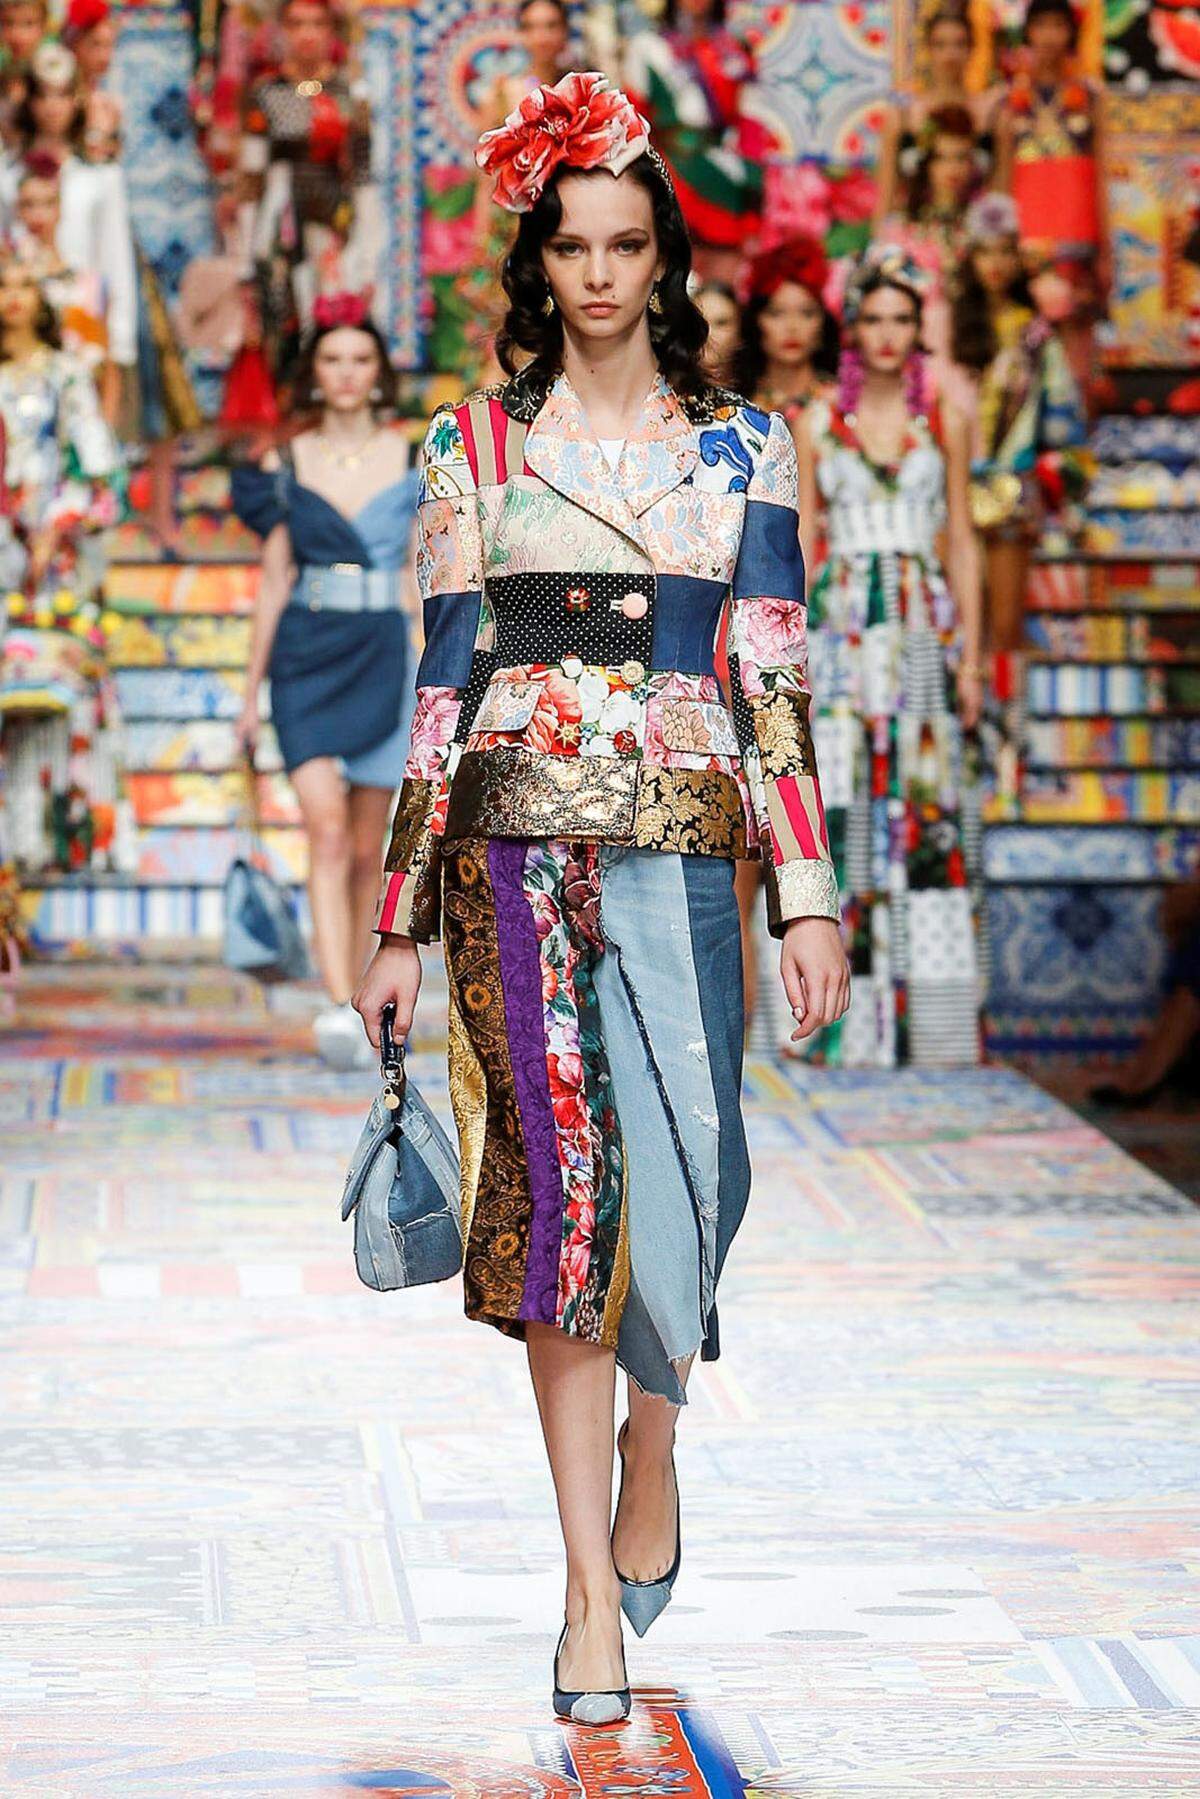 Zurückhaltung zelebriert man bei Dolce&amp;Gabbana auch im Zuge der Krise nicht. "Sizilianisches Patchwork" nannte das Design-Duo vielmehr die bunten Prints.